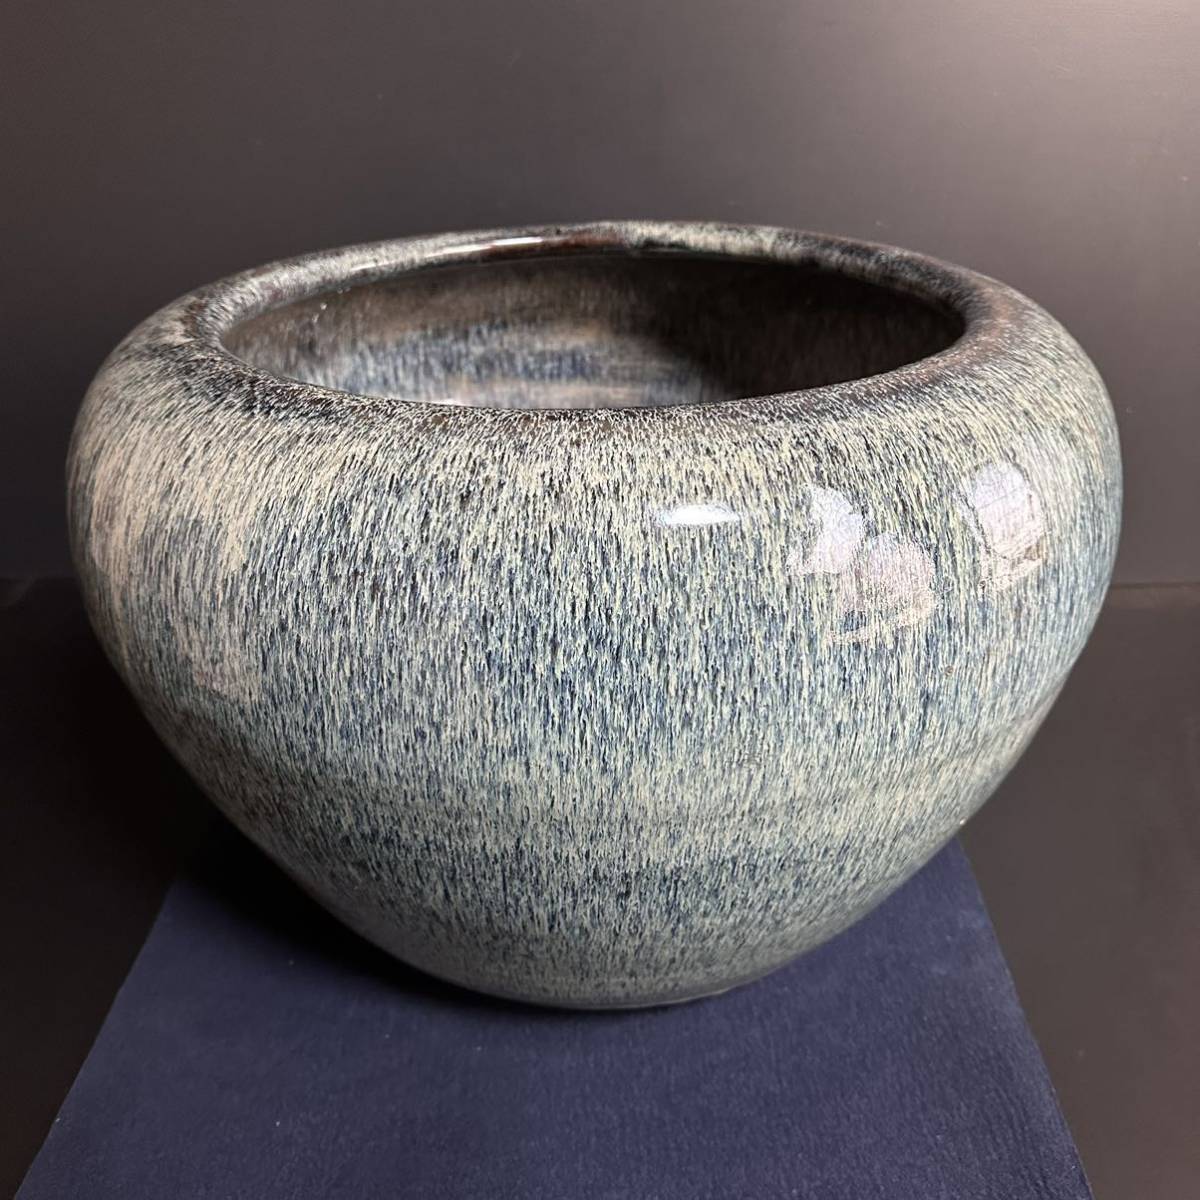 [KJ365] 大型 海鼠釉 火鉢 手炙り 瓶掛け 植木鉢 古民具 炭道具 美術陶器の画像4